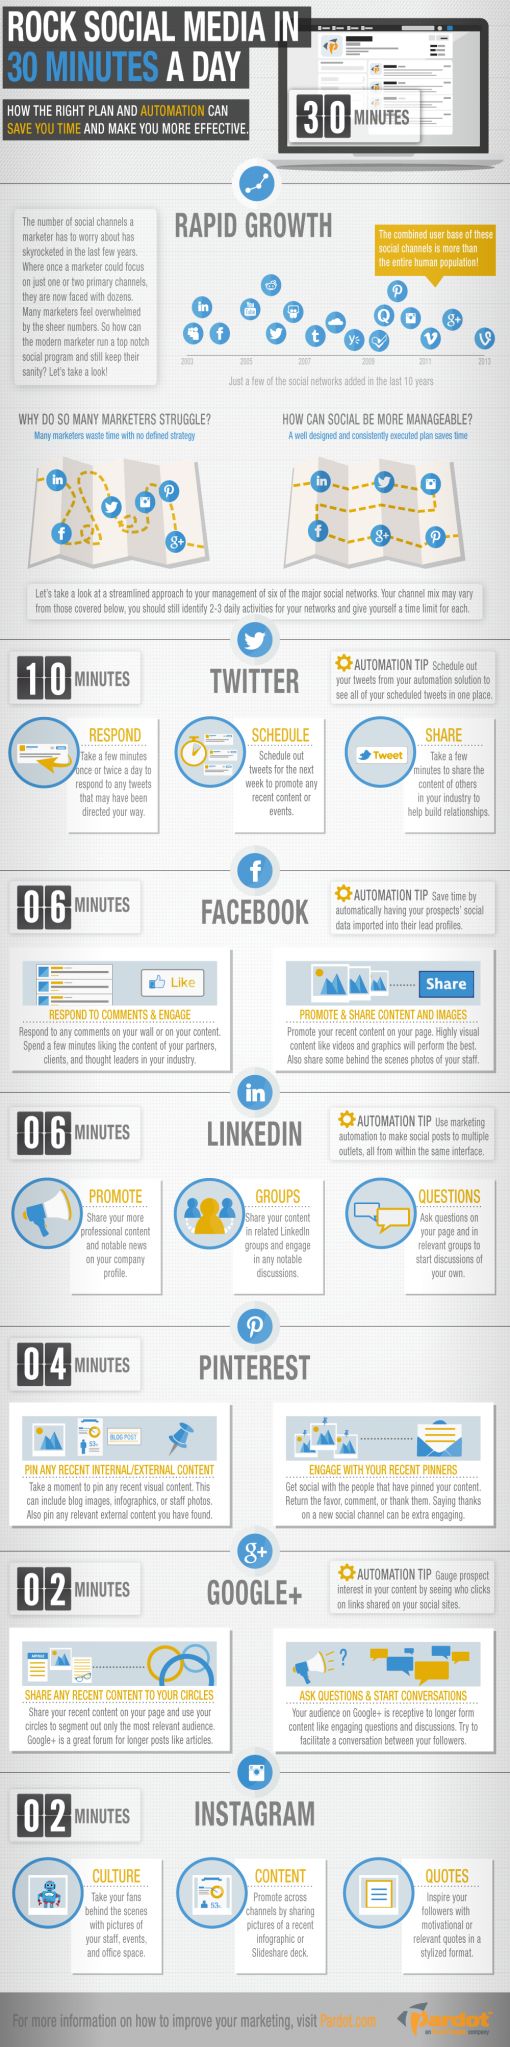 30-minute-social-media-infographic.jpg